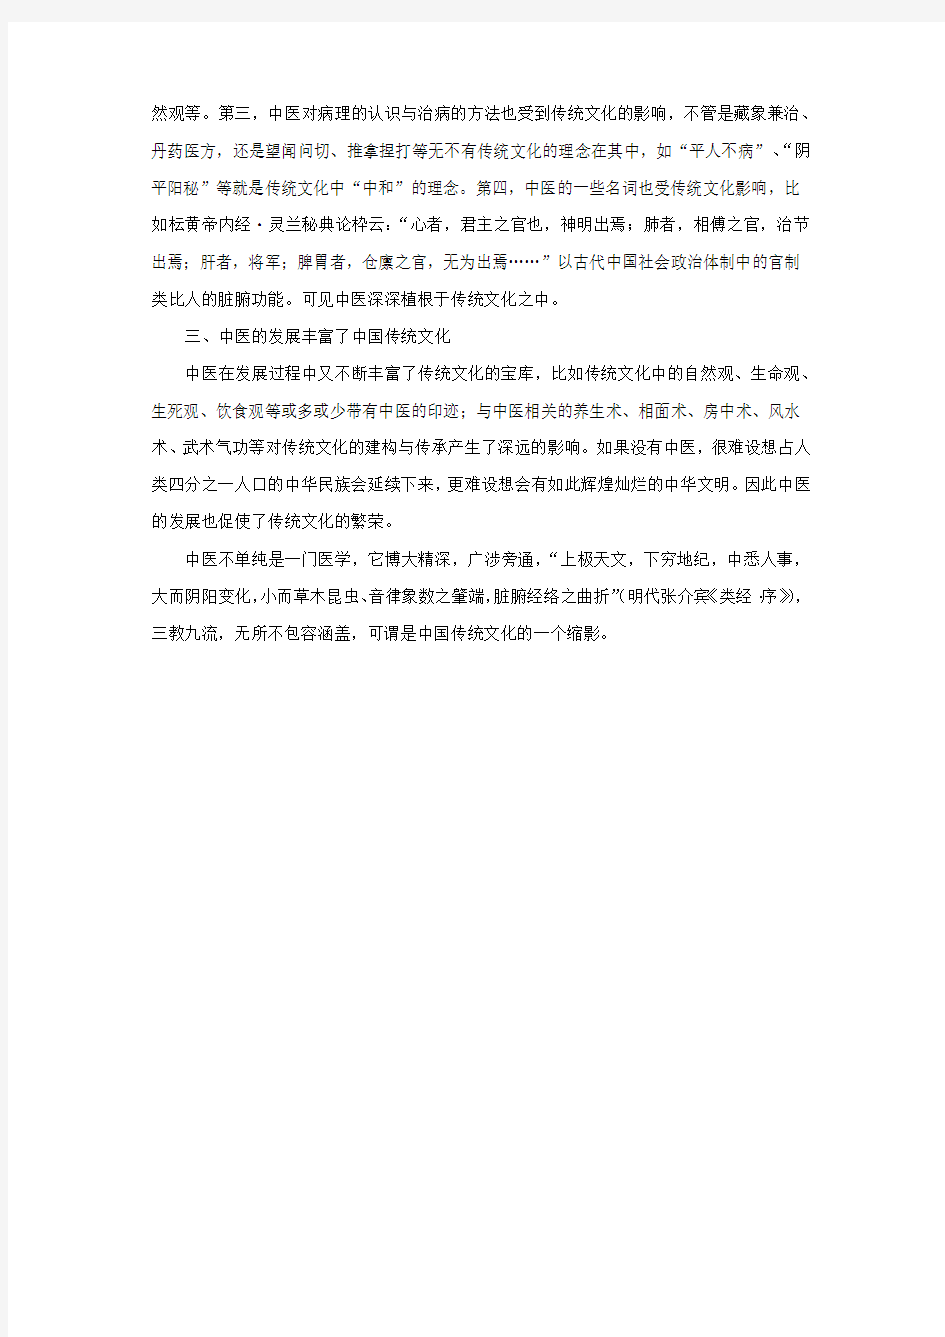 完整word版,中医与中国传统文化的关系